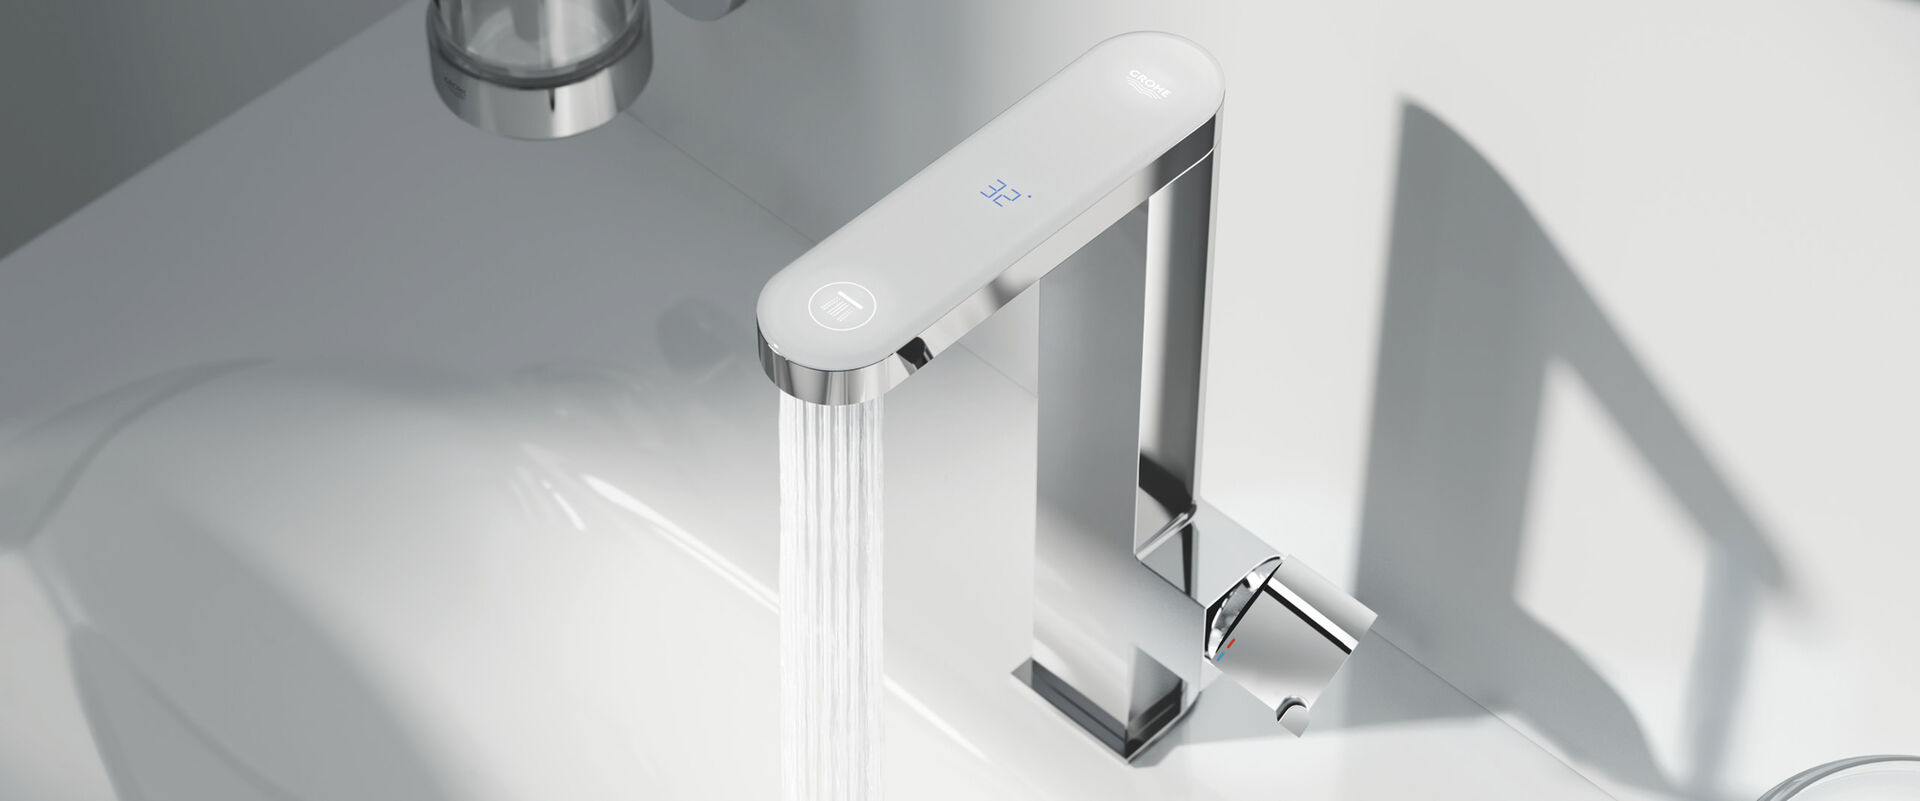 GROHE Plus Armaturen: Das Badezimmer wird smart